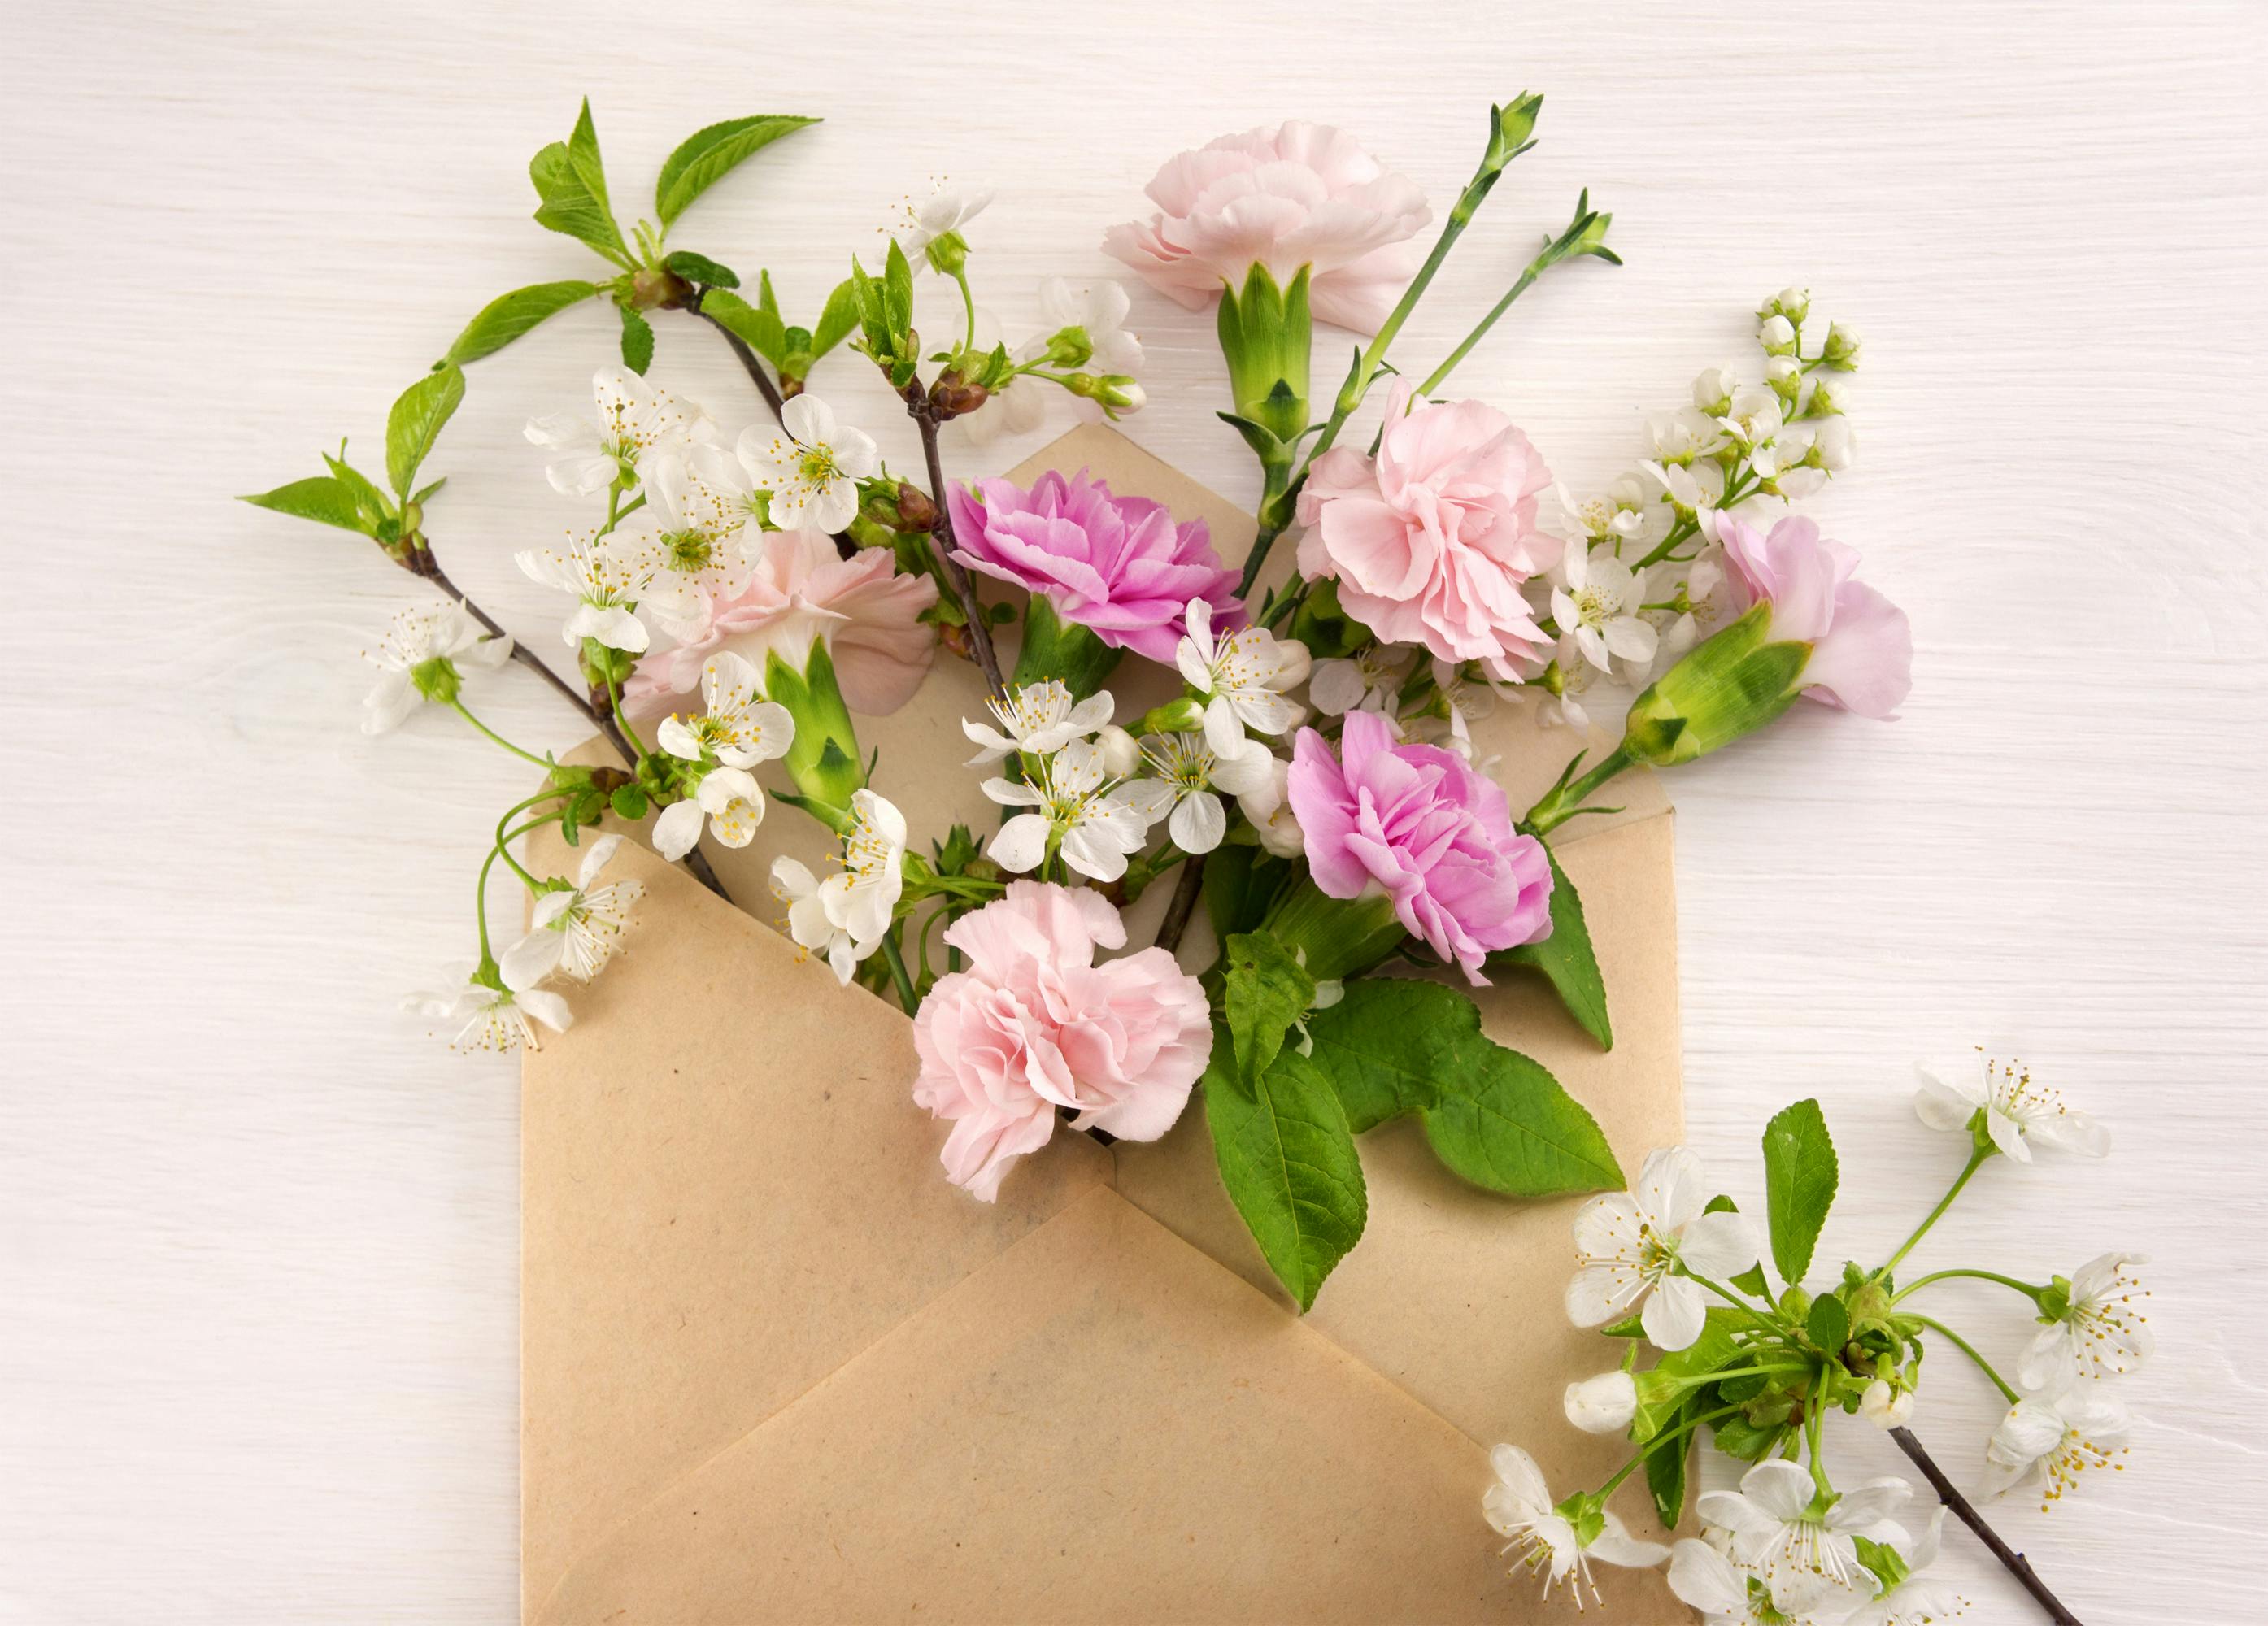 quelques tiges de fleurs dans une enveloppe courrier